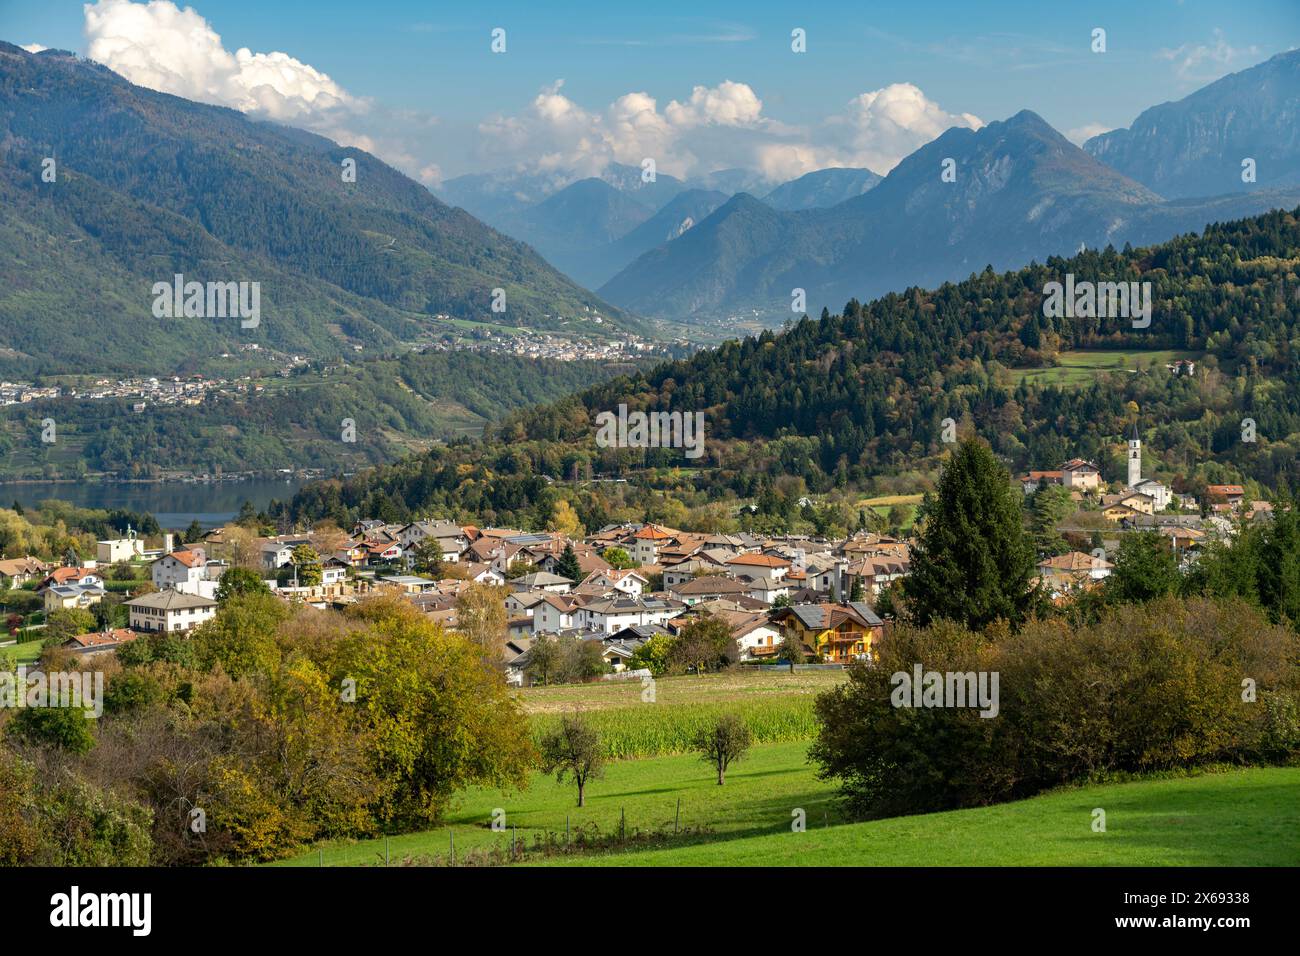 Vattaro, Lake Caldonazzo and the Valsugana countryside, Trentino, Italy, Europe Stock Photo